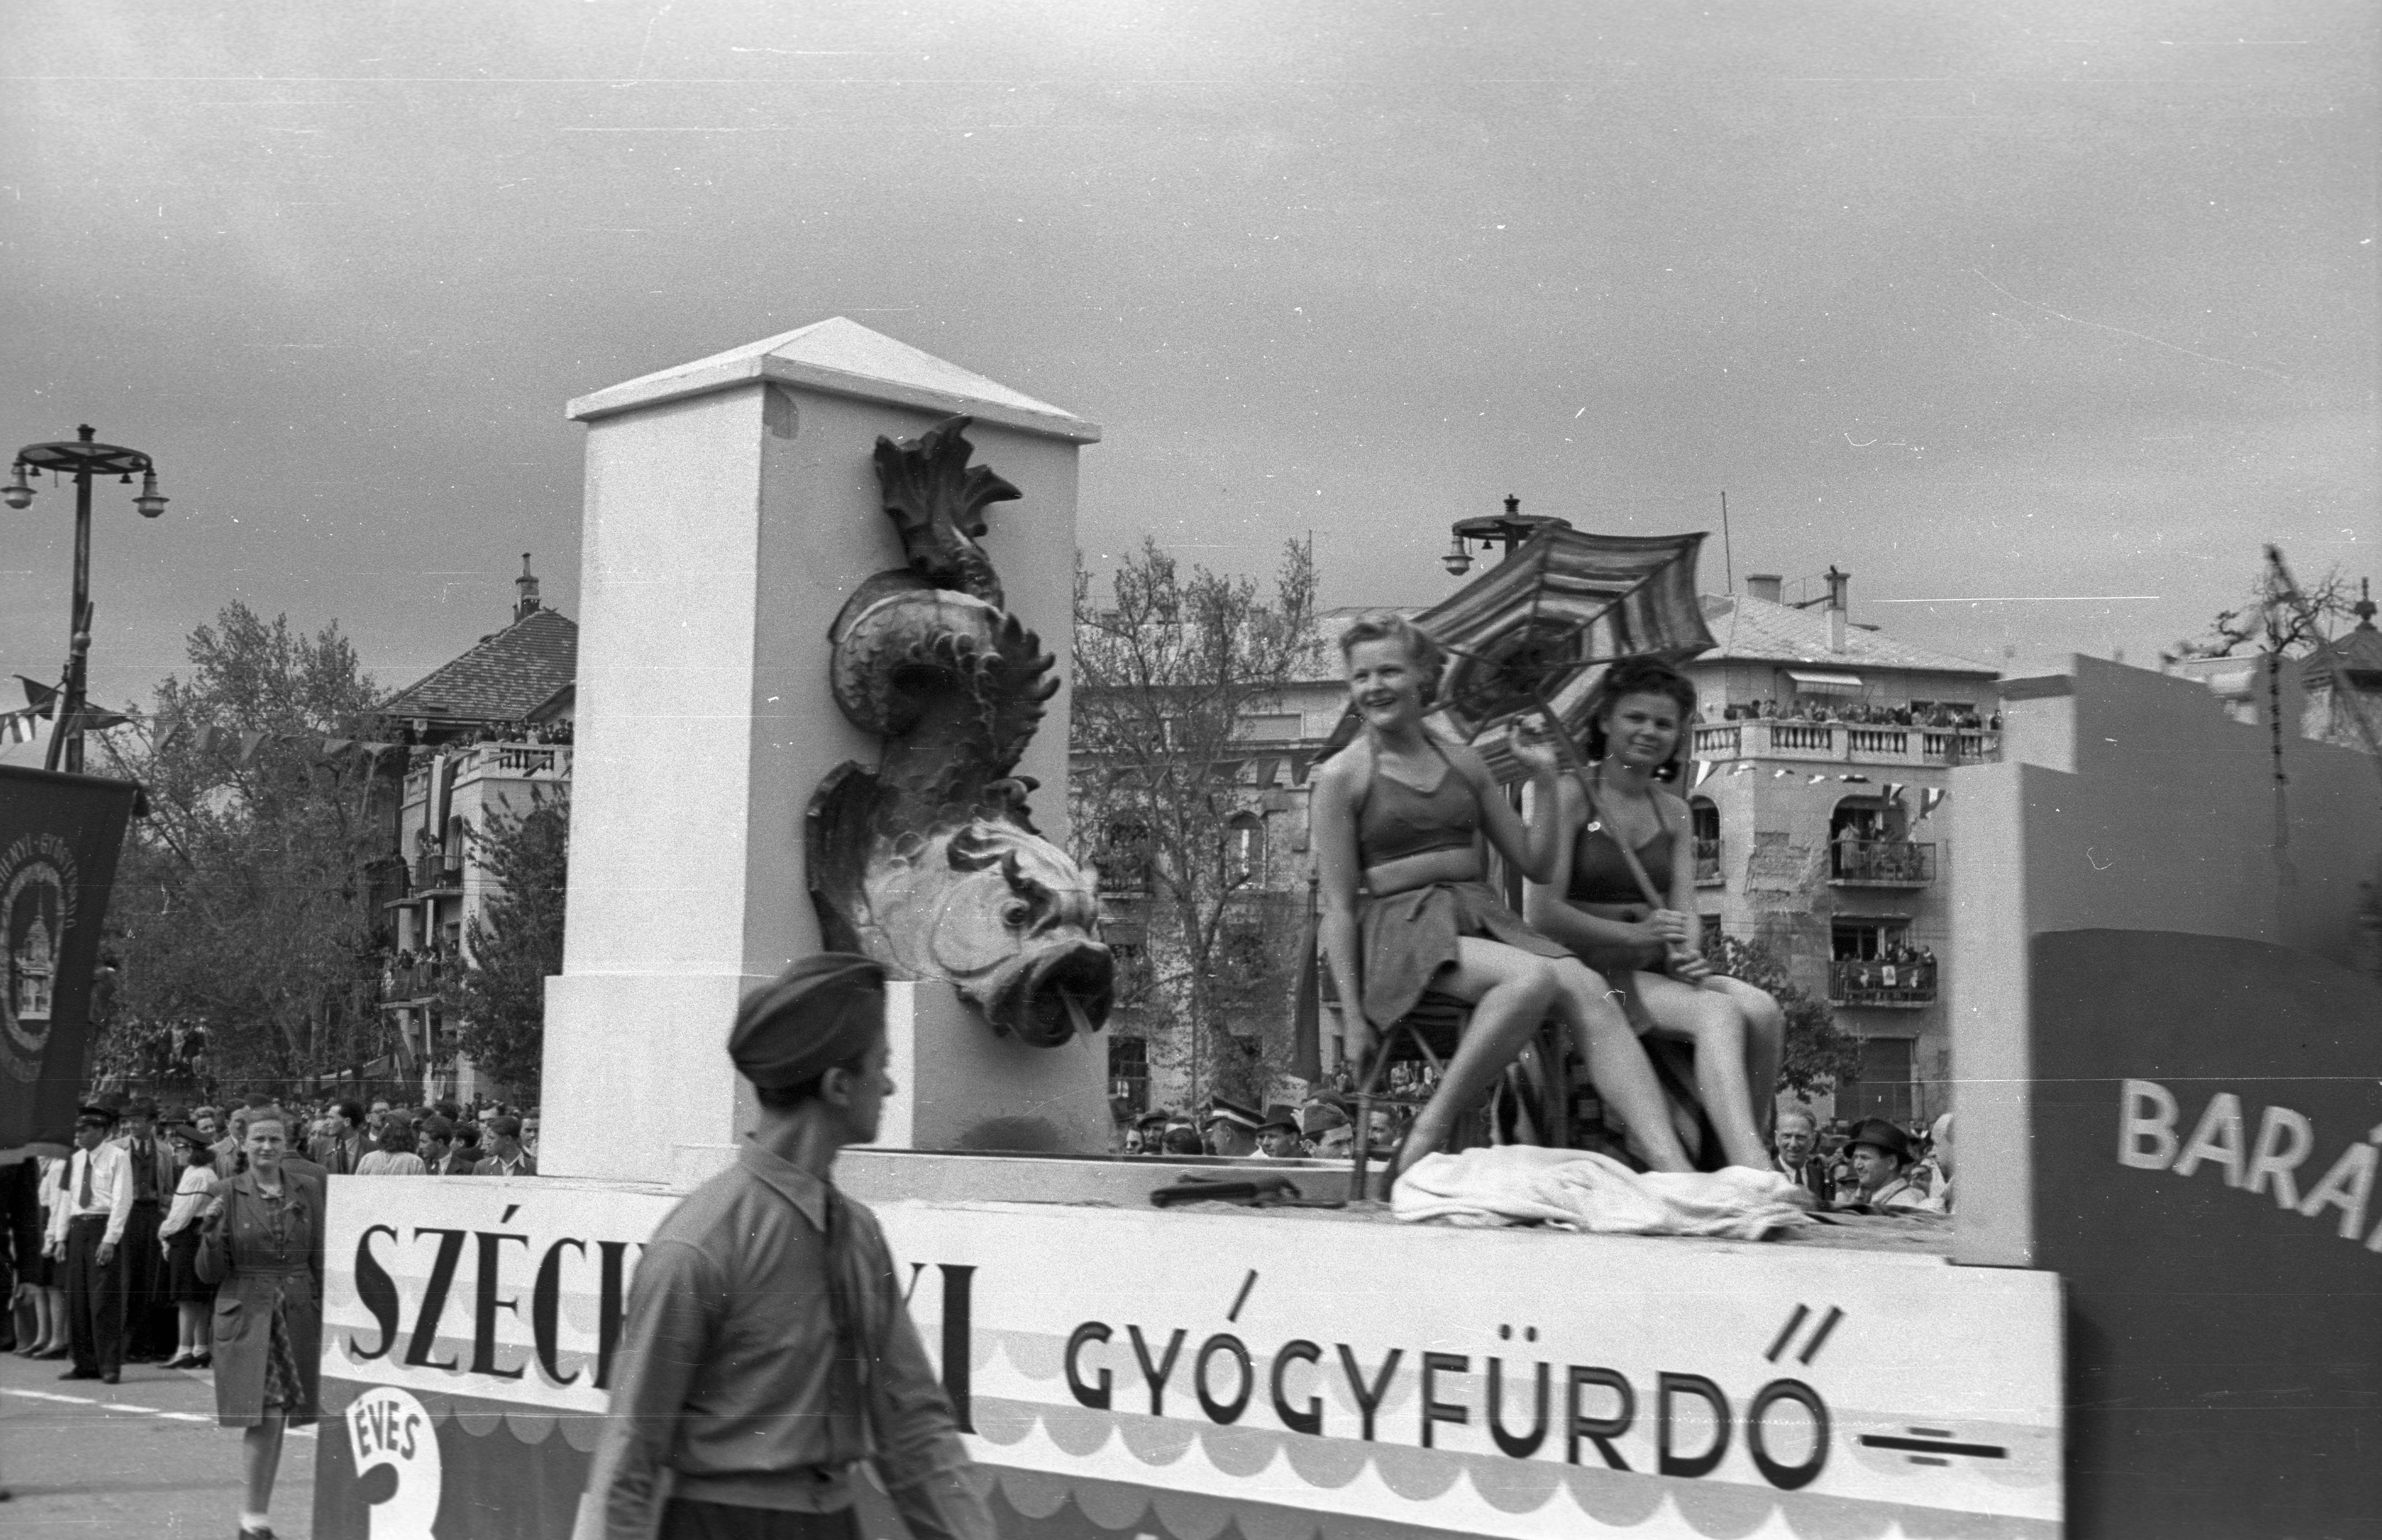 Fürdőruhás nők a Széchenyi gyógyfürdő kollektívájának képviseletében. A felvonuló ezúttal balra néz.